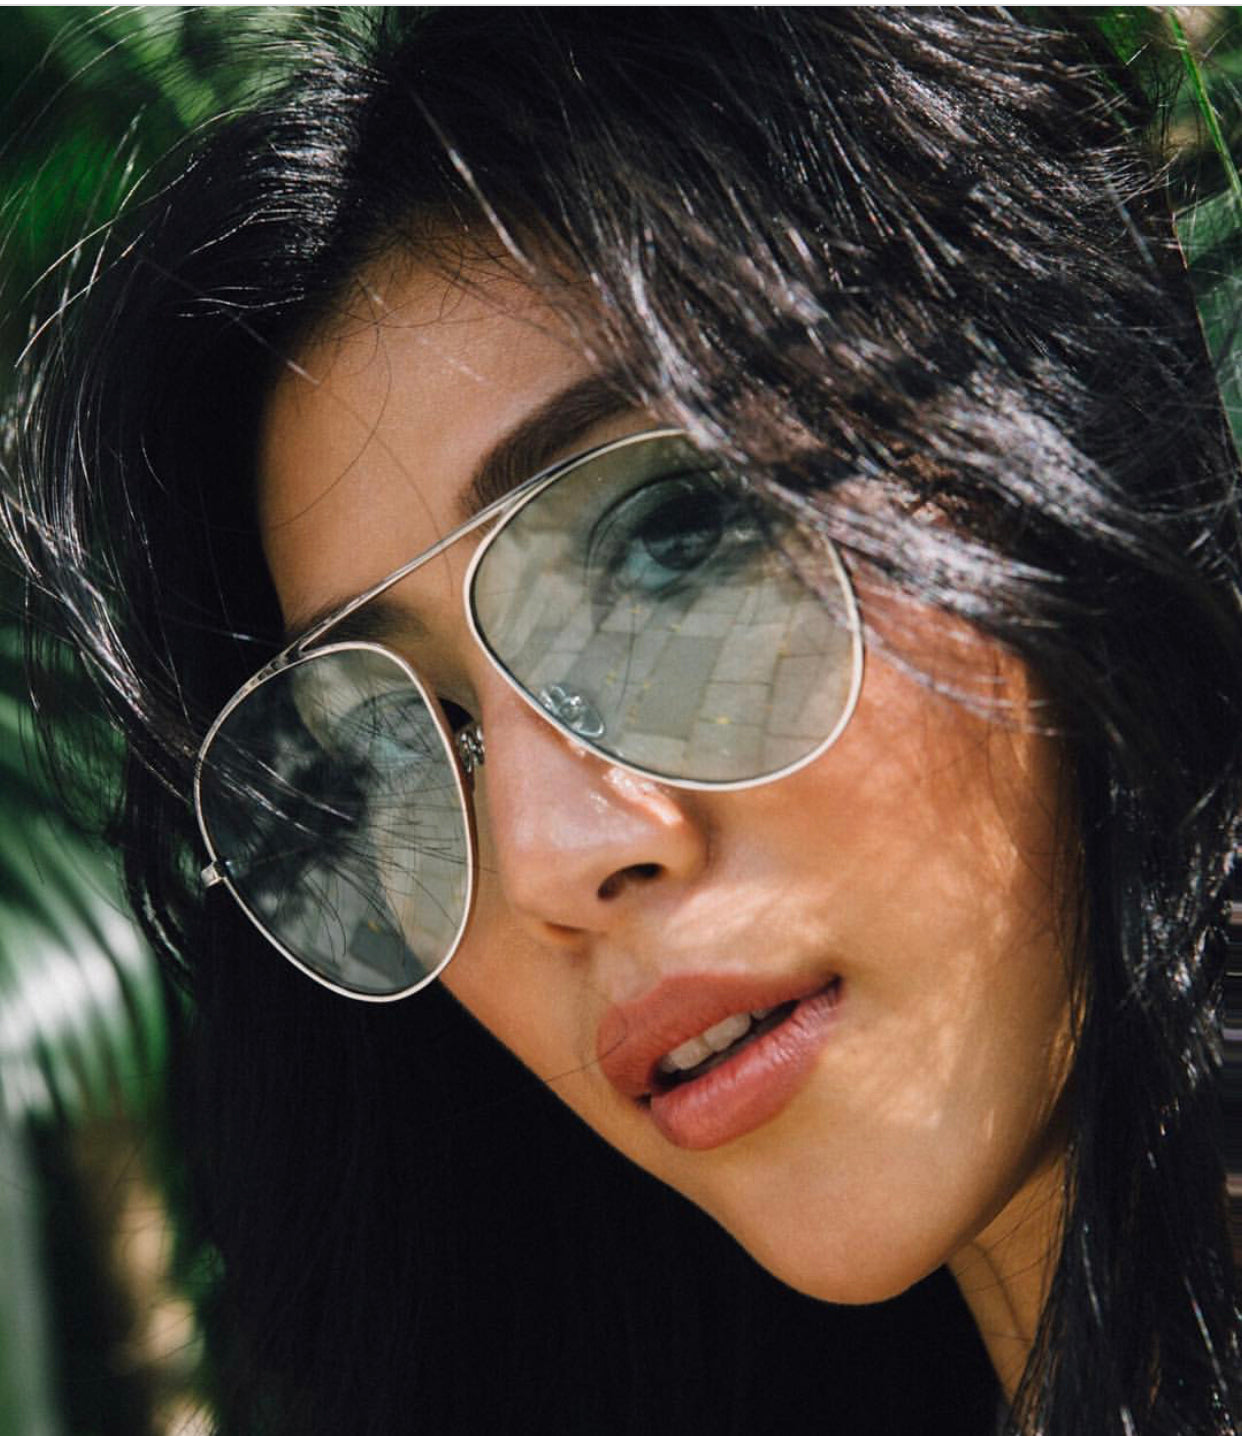 莫莉 Molly Chiang wears REVE aviator sunglasses